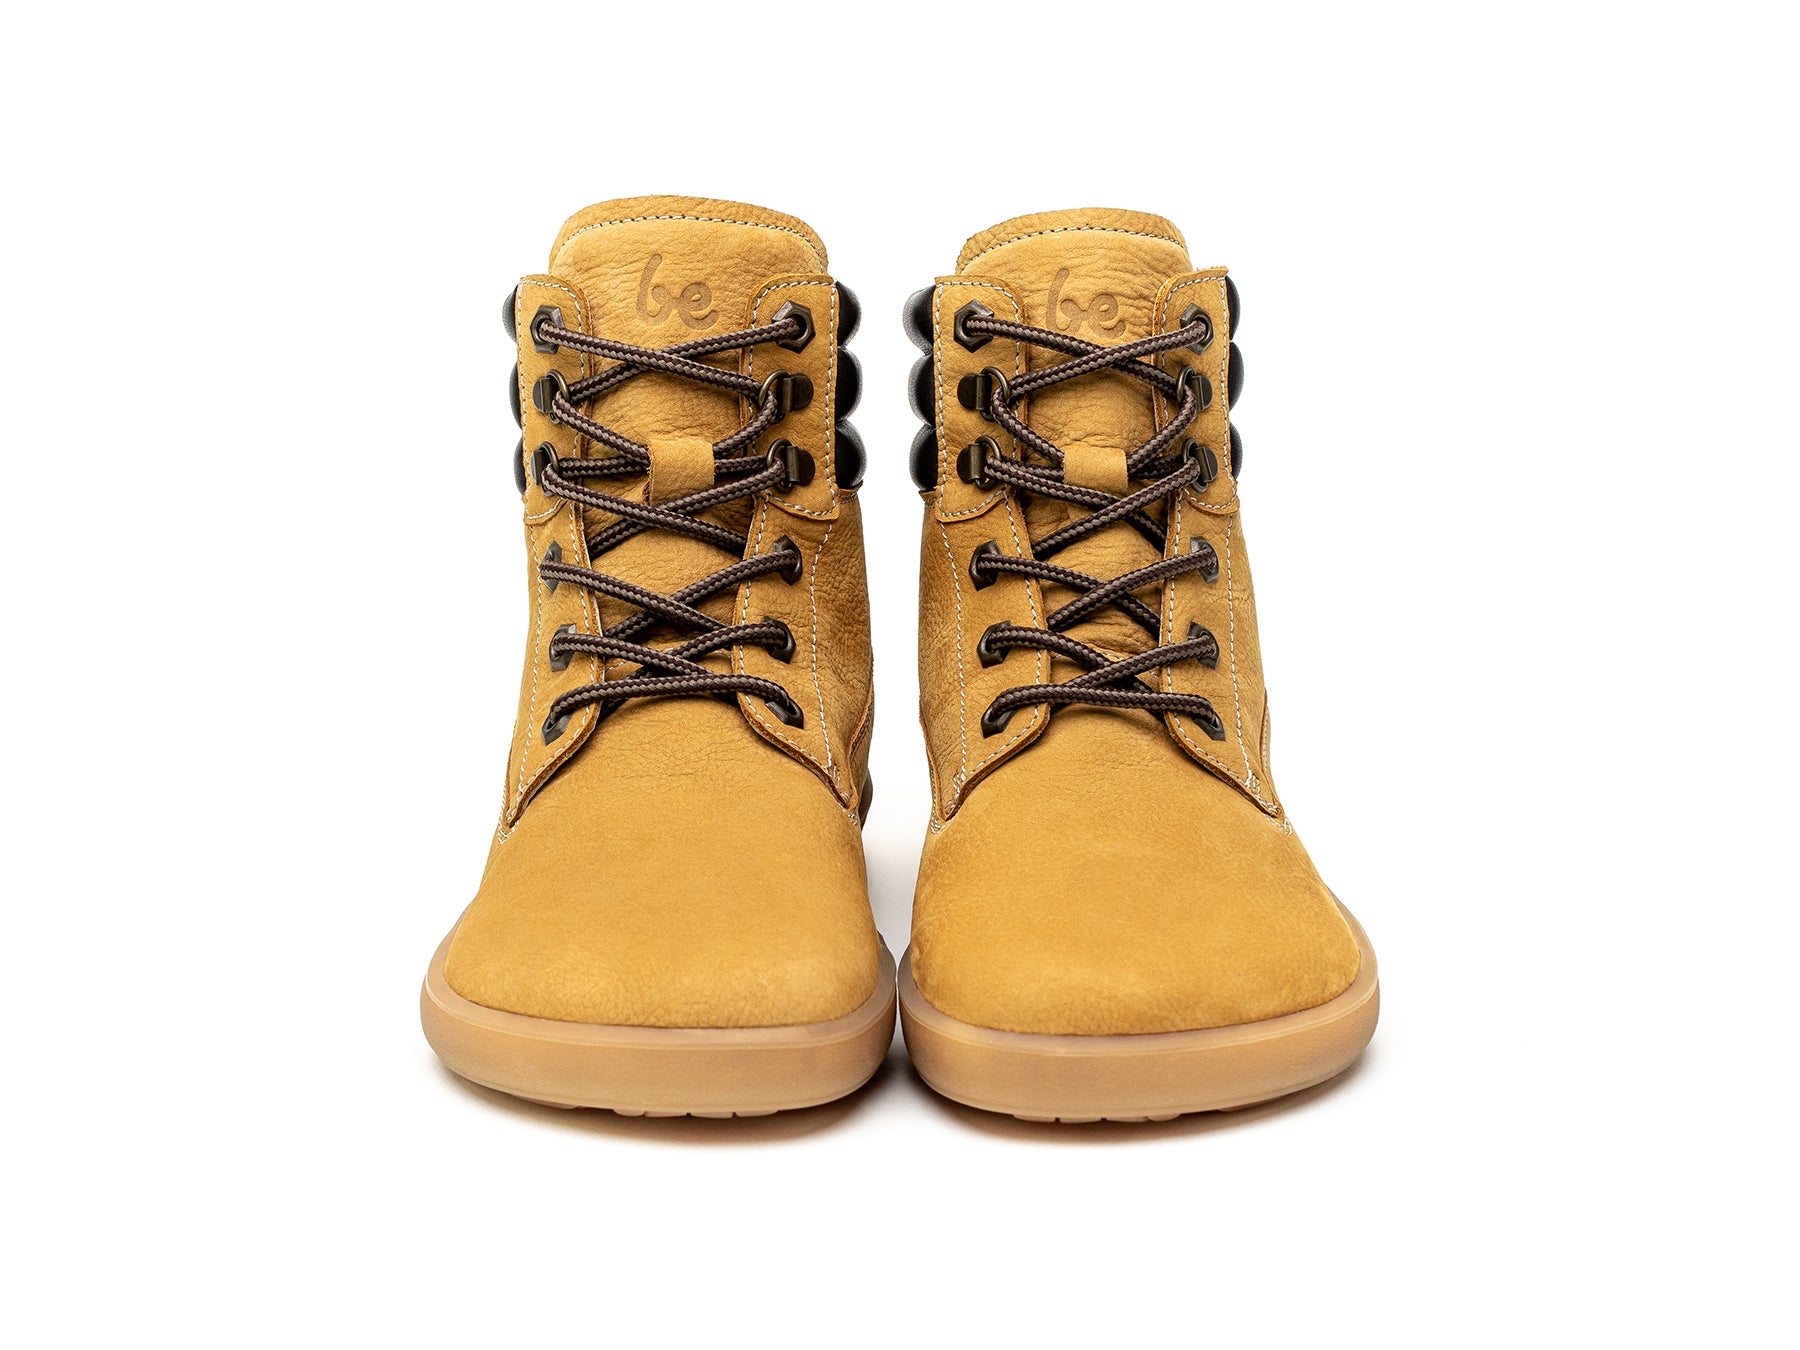 Barefoot Boots Be Lenka Nevada Neo - Mustard 5 OzBarefoot Australia